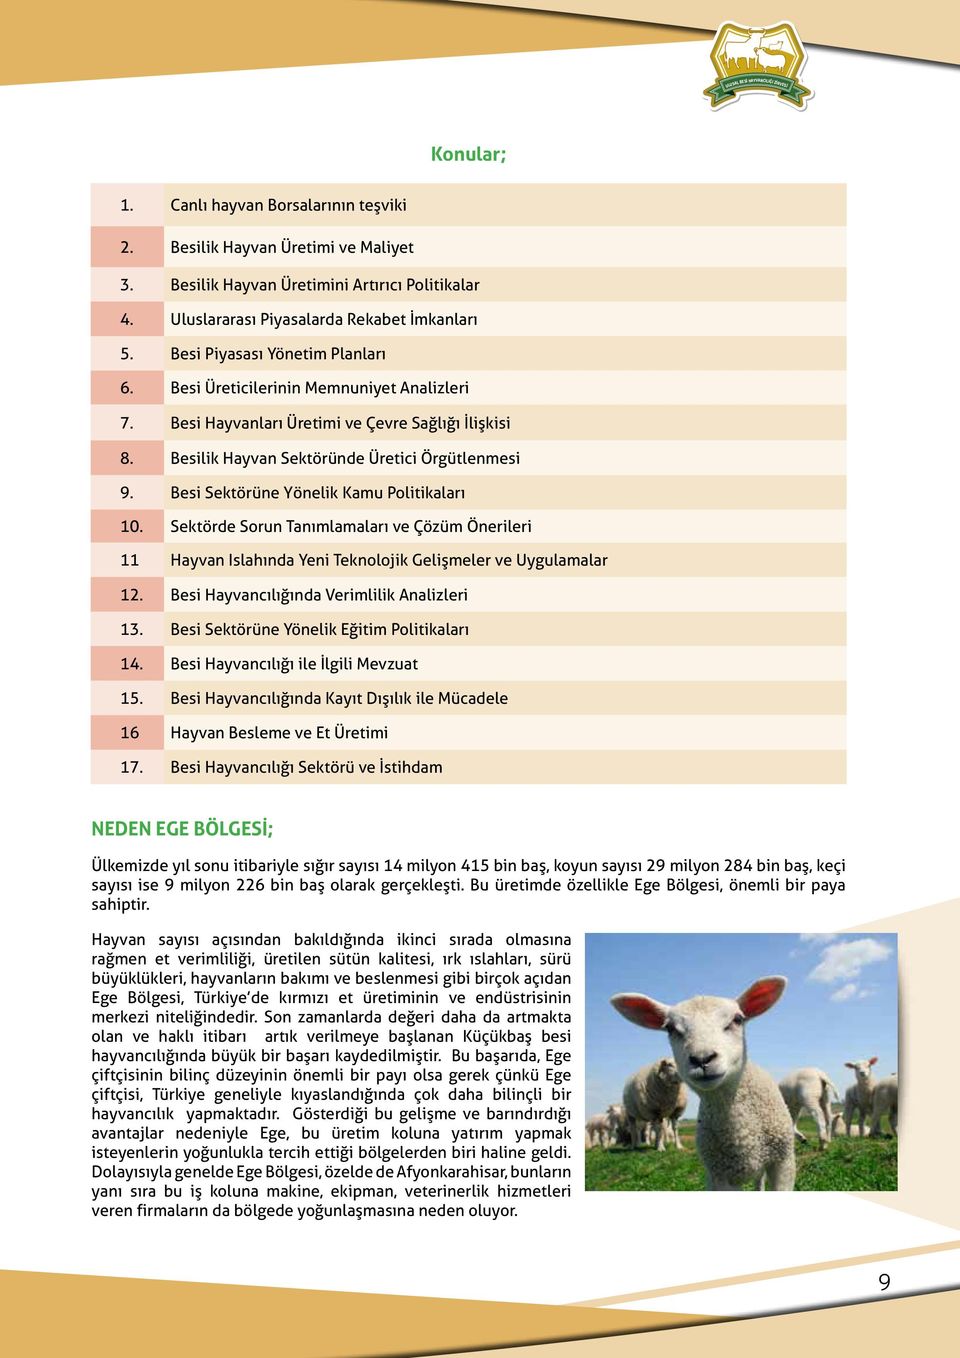 Besi Sektörüne Yönelik Kamu Politikaları 10. Sektörde Sorun Tanımlamaları ve Çözüm Önerileri 11 Hayvan Islahında Yeni Teknolojik Gelişmeler ve Uygulamalar 12.